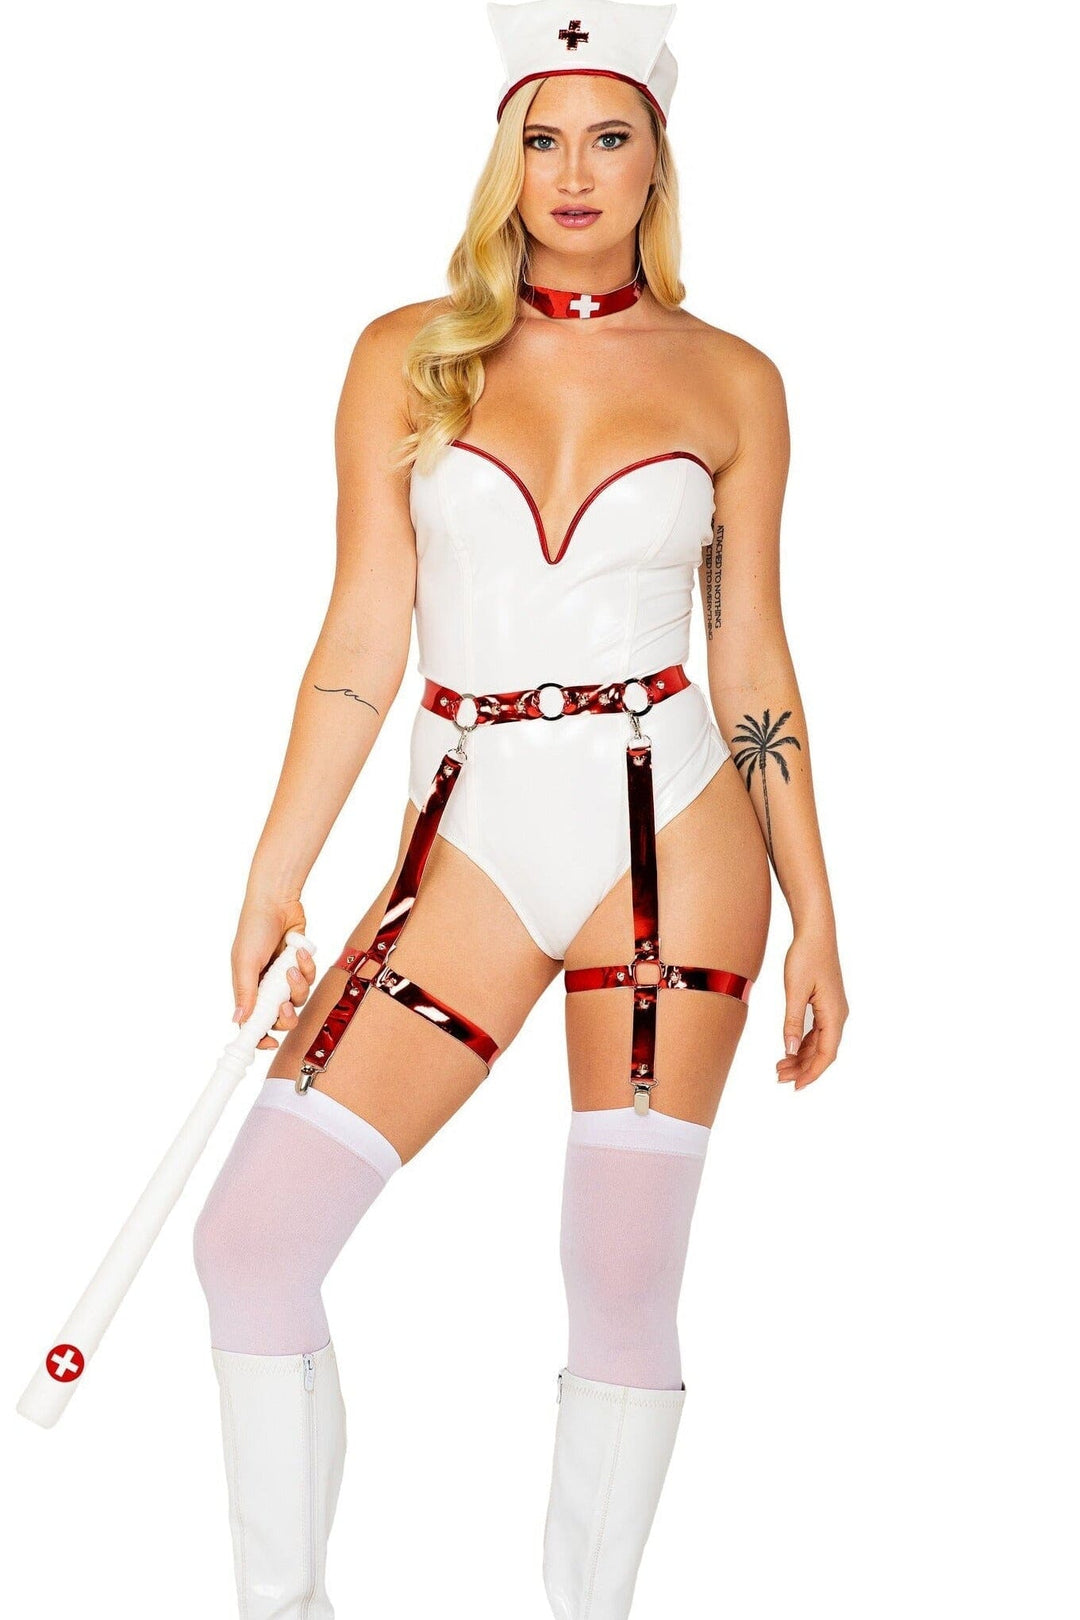 4pc Naughty Nurse-Nurse Costumes-Roma Costumes-SEXYSHOES.COM